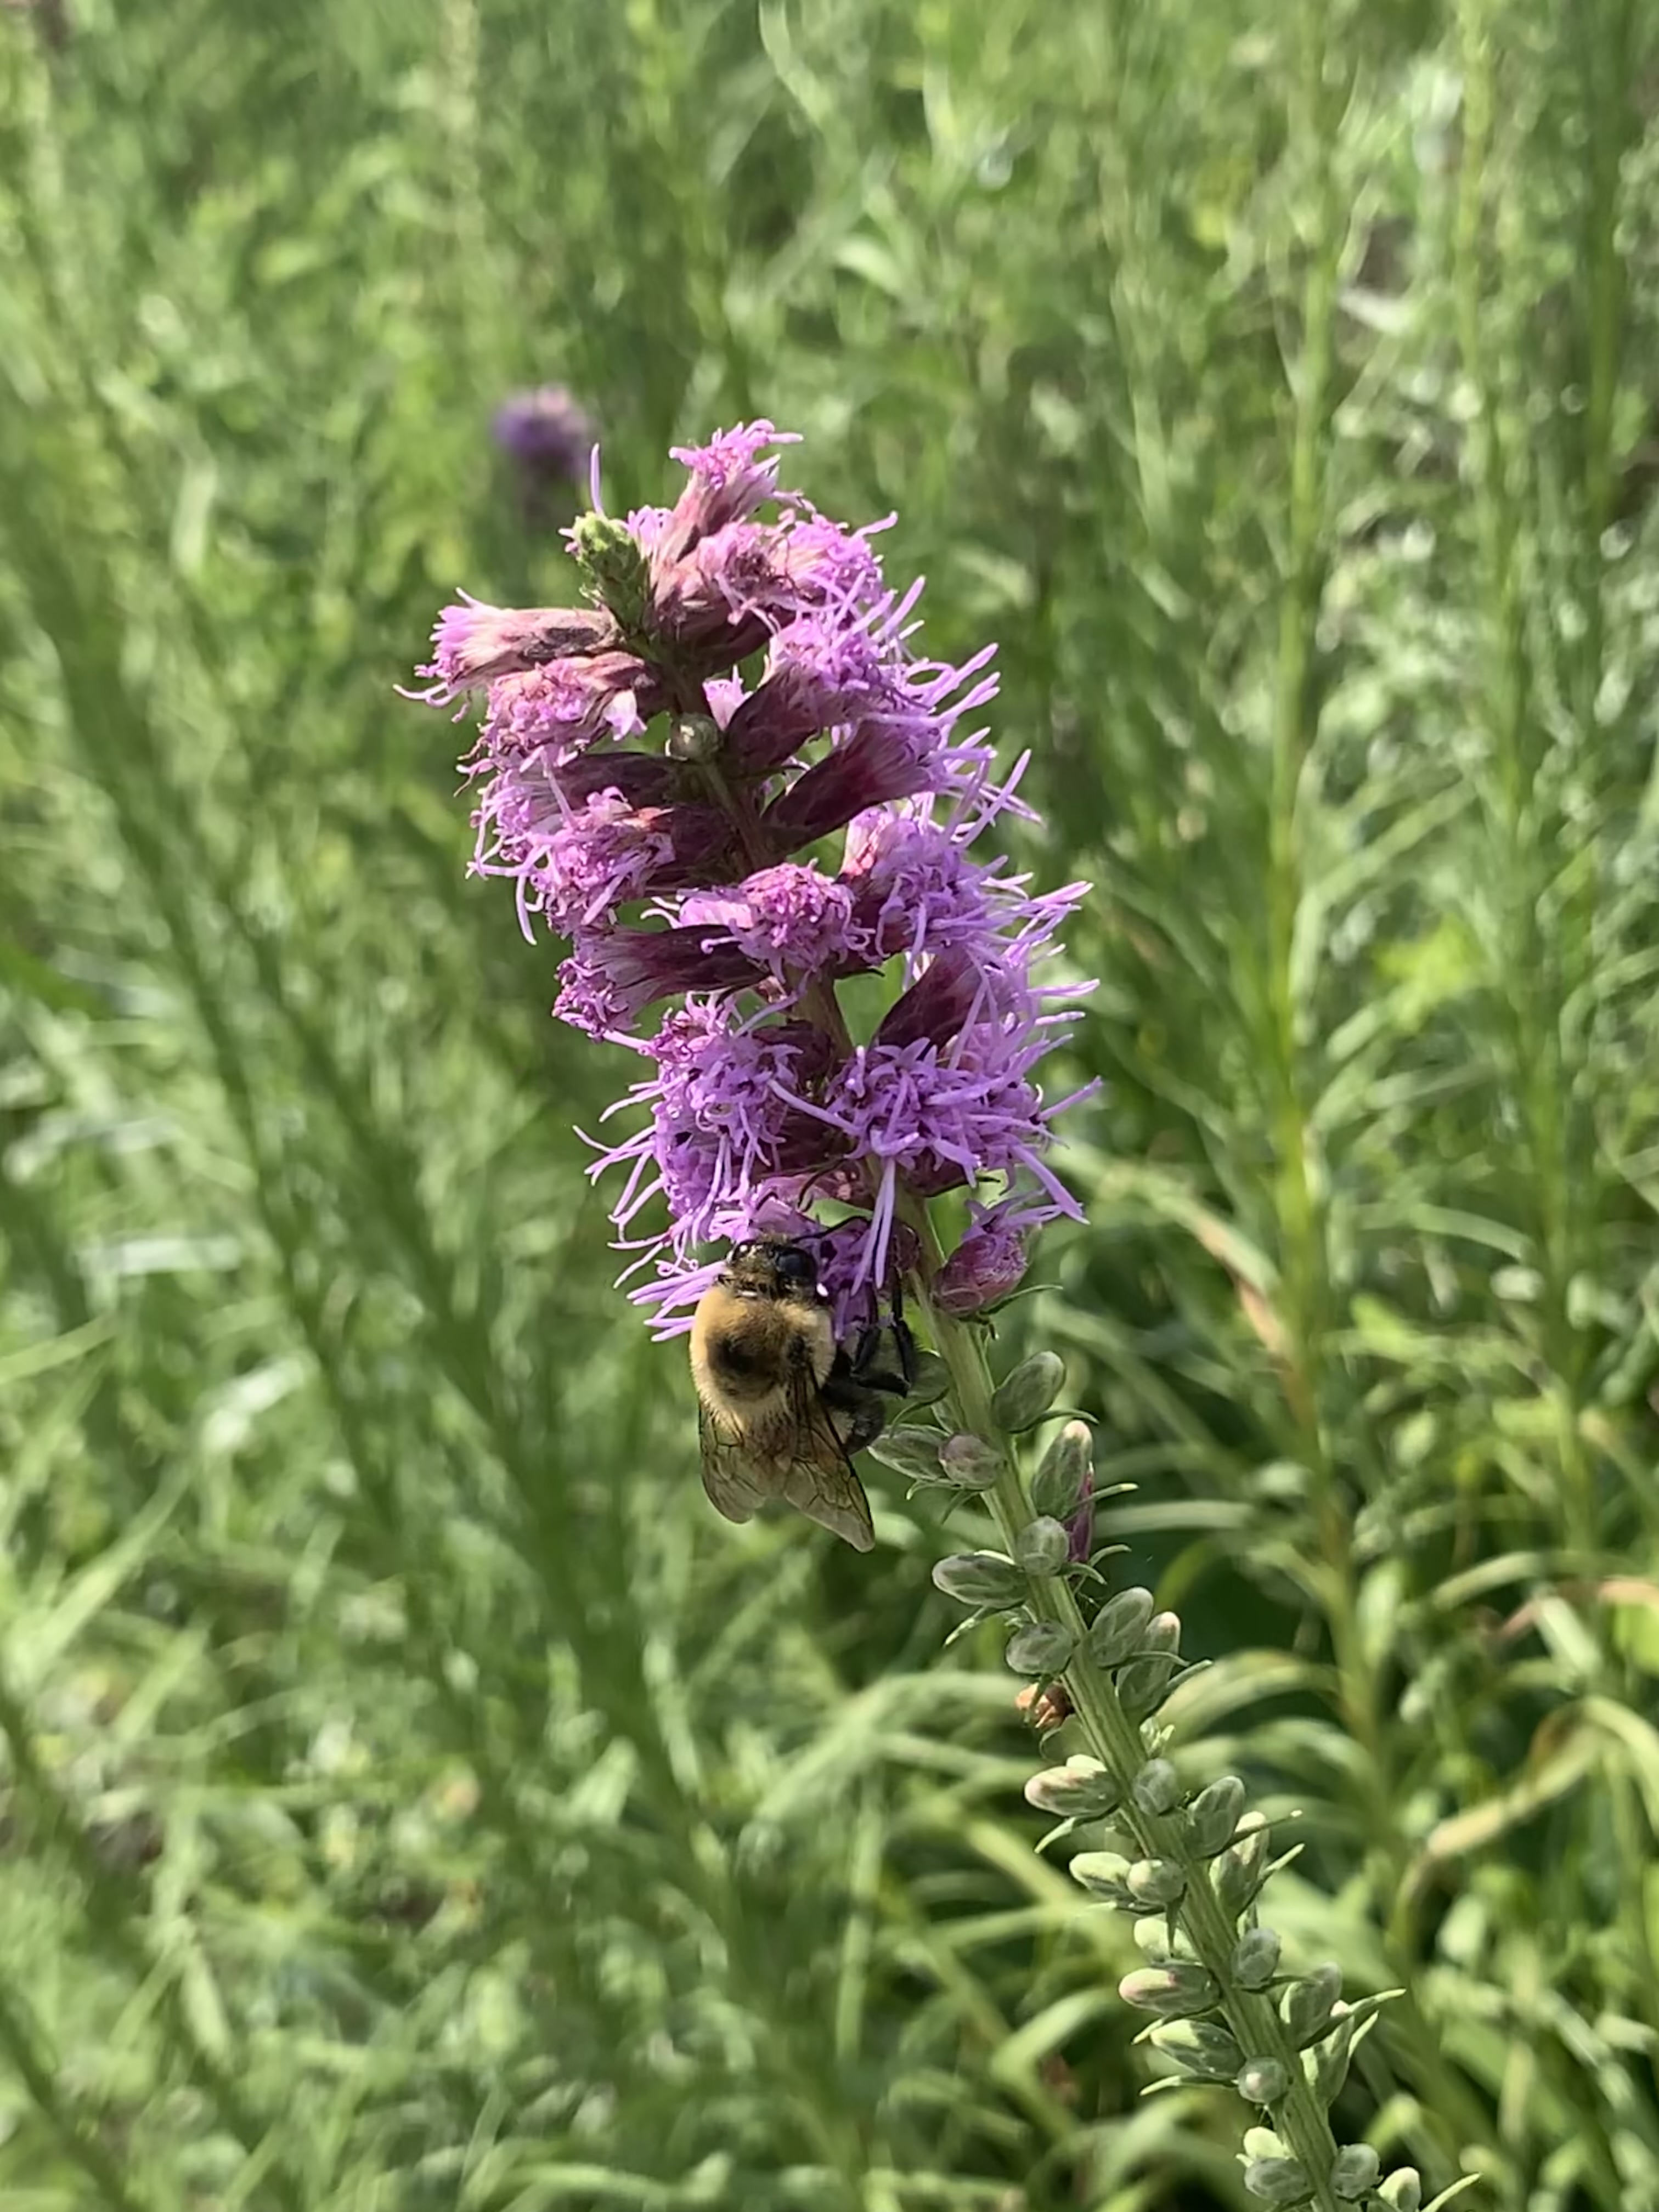 A bushy purple flower with a bumblebee on it